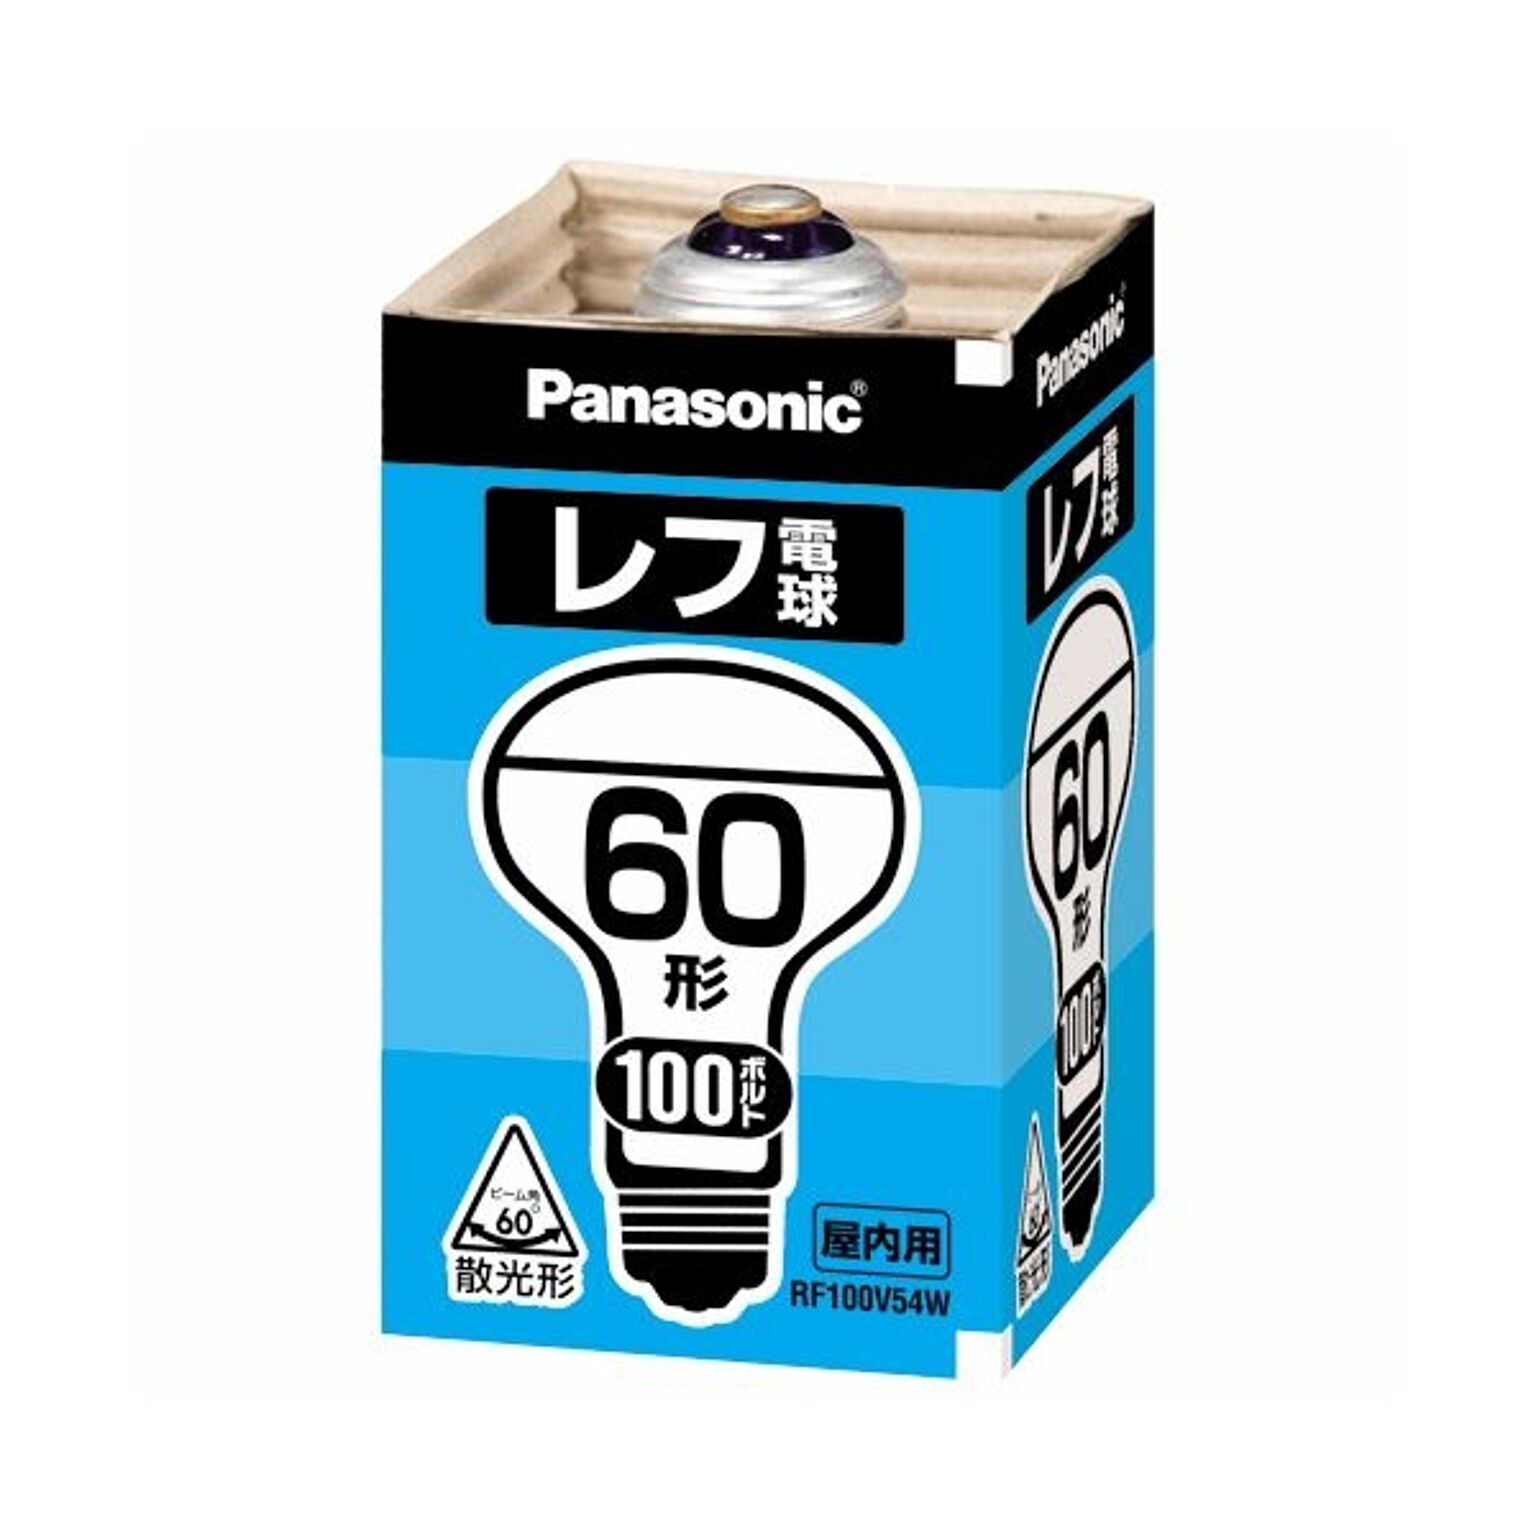 共同照明 4個セット レール用スポットライト LED電球60W形付き E26